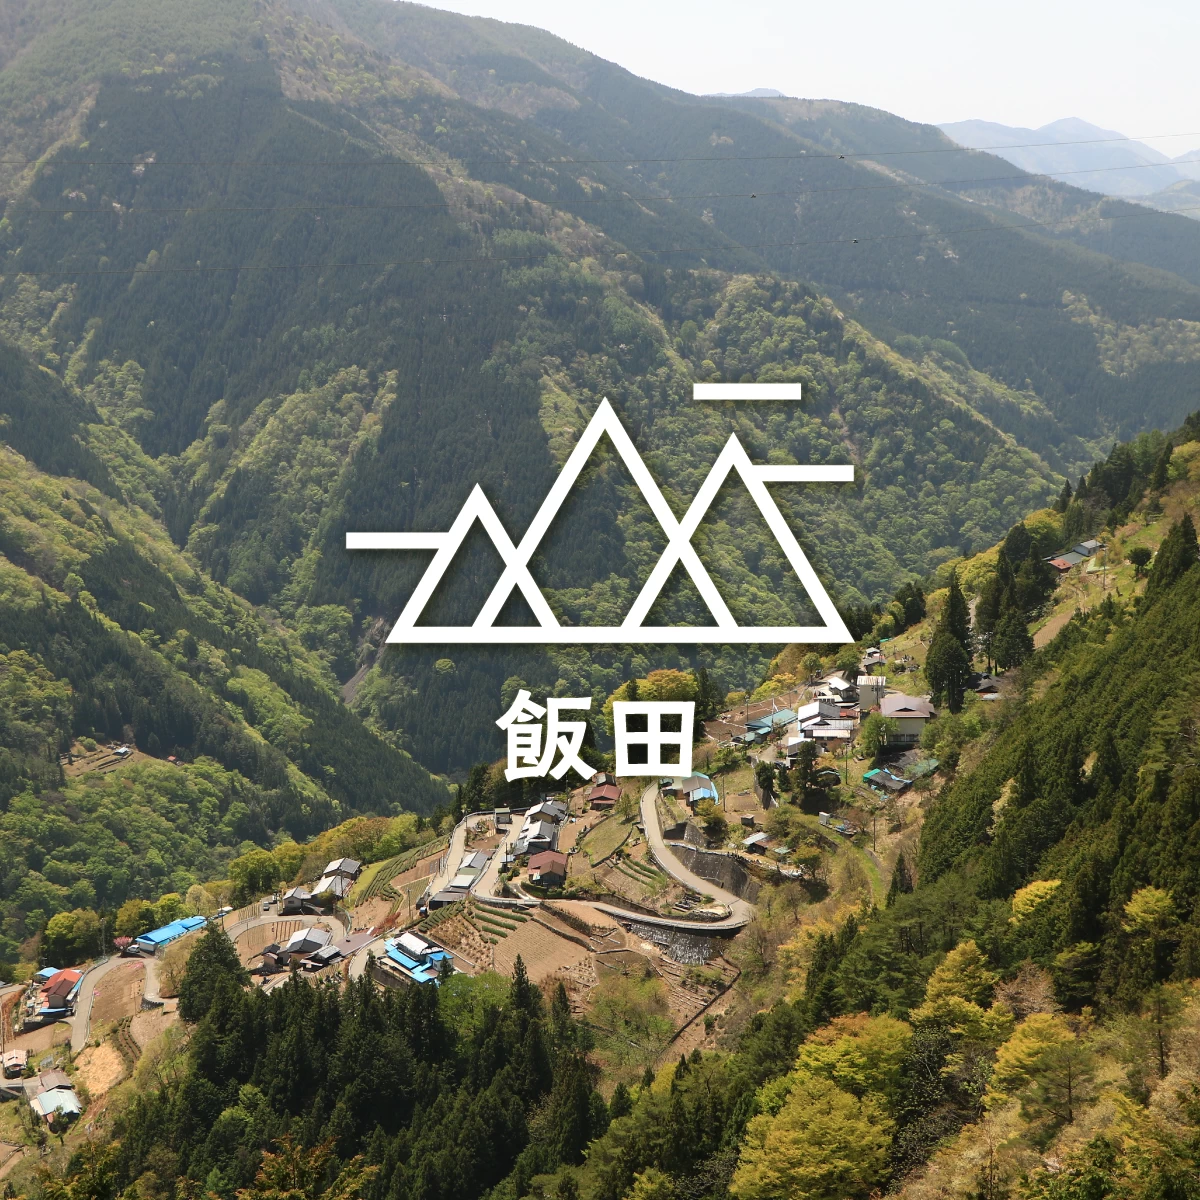 “日本のチロル”を訪ねて。長野・下栗の里へ絶景を巡る自転車旅